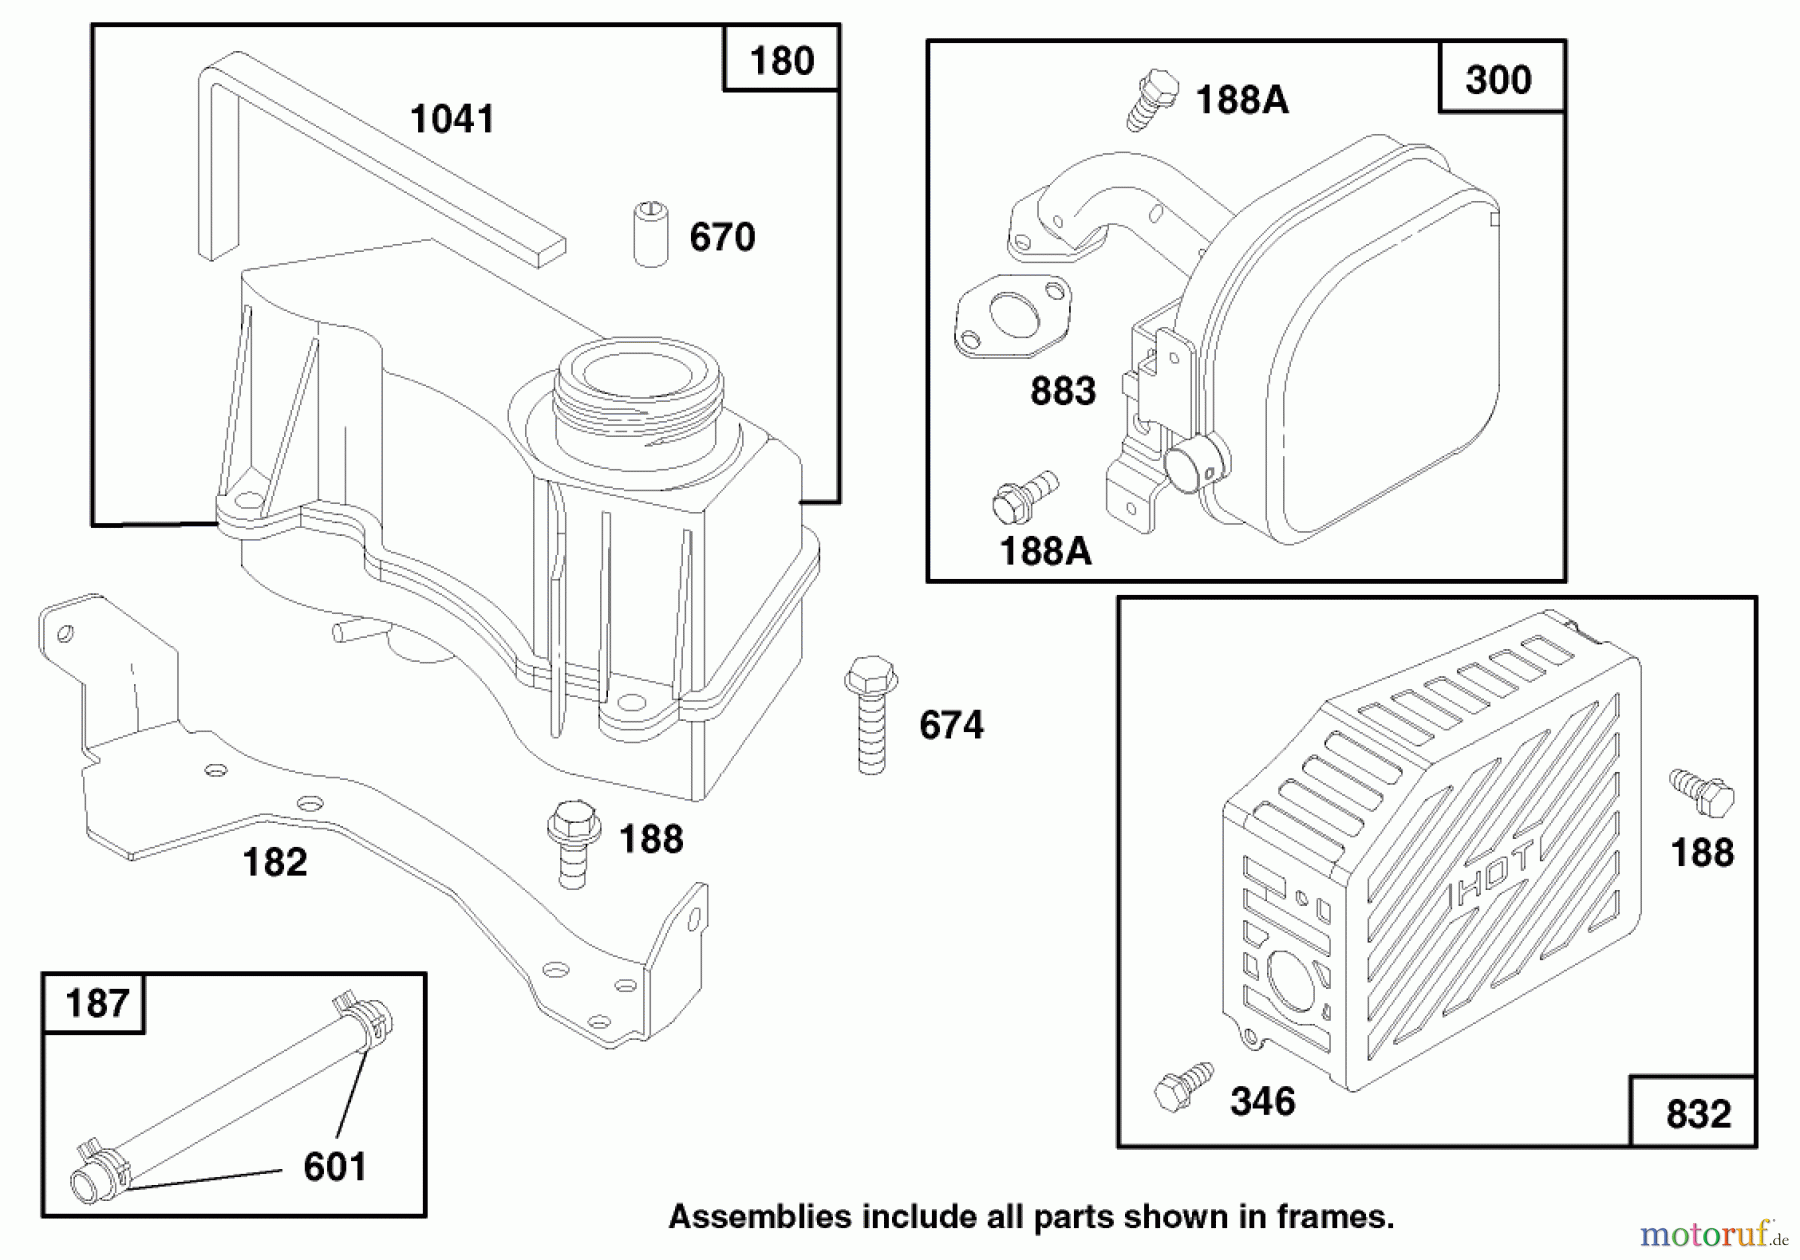  Toro Neu Mowers, Walk-Behind Seite 1 20465 - Toro Super Recycler Mower, 1997 (790000001-799999999) ENGINE GTS 150 #7